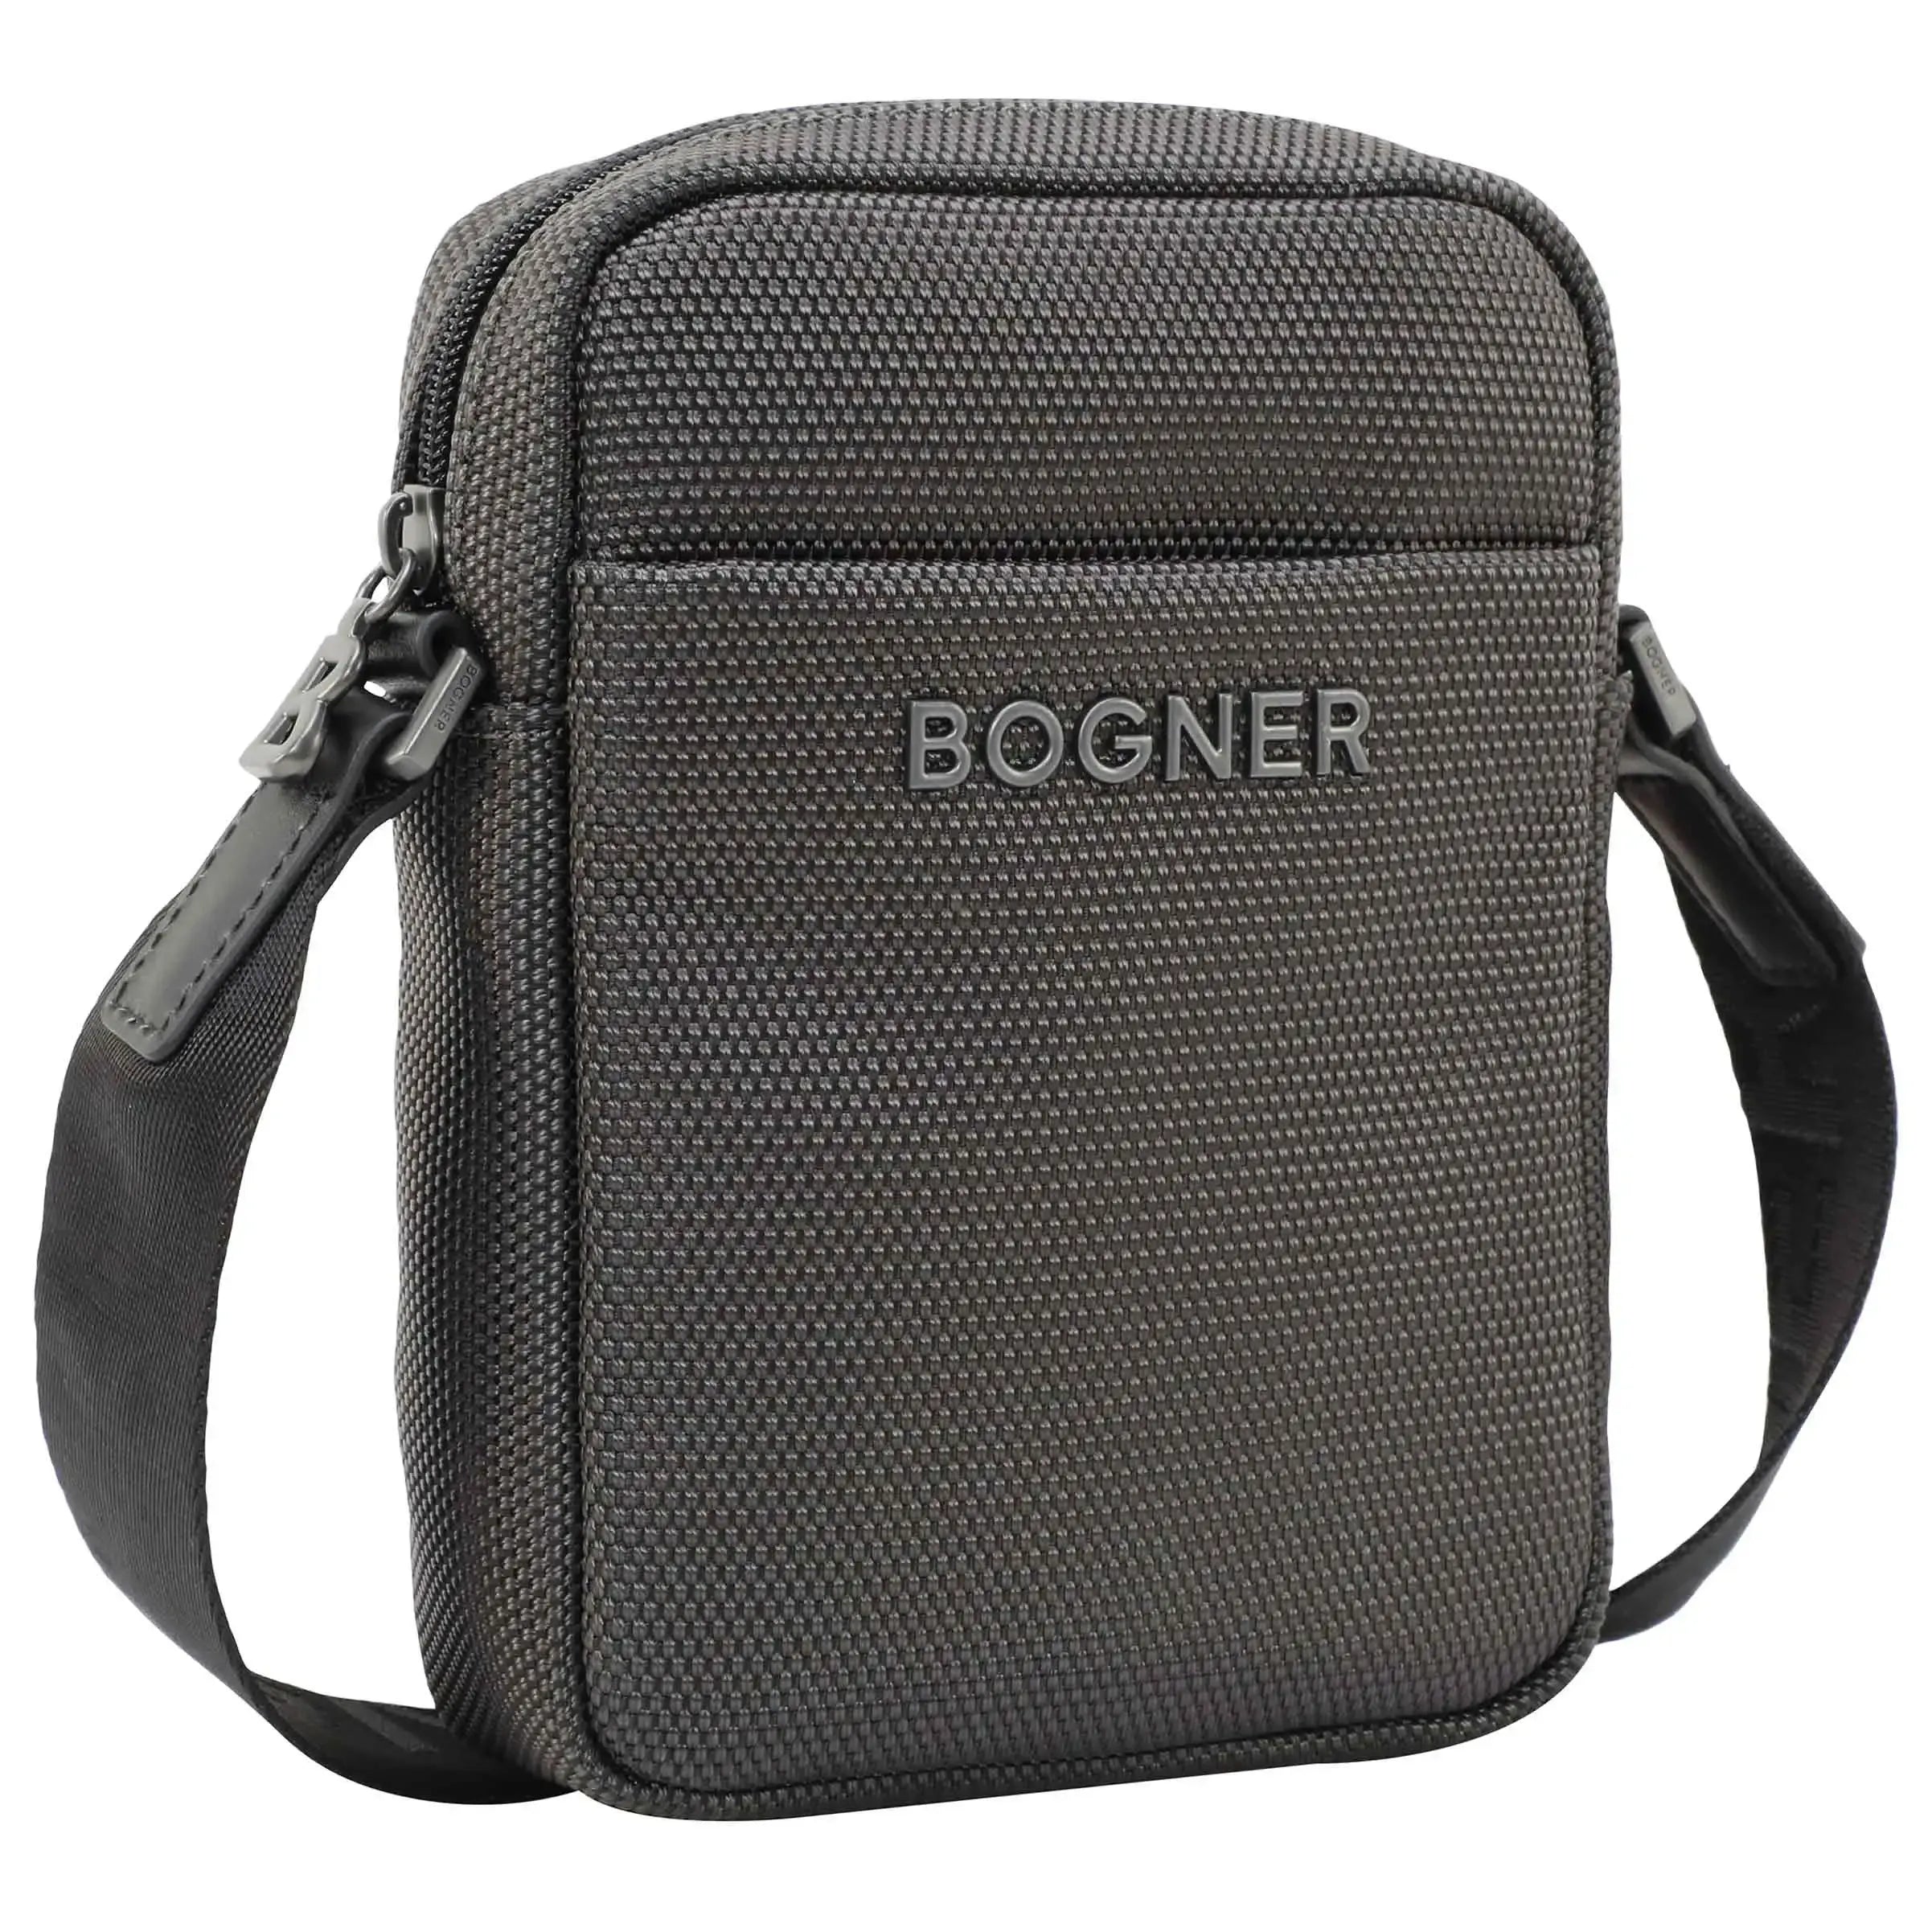 Bogner Keystone Mats Shoulderbag XSVZ - black